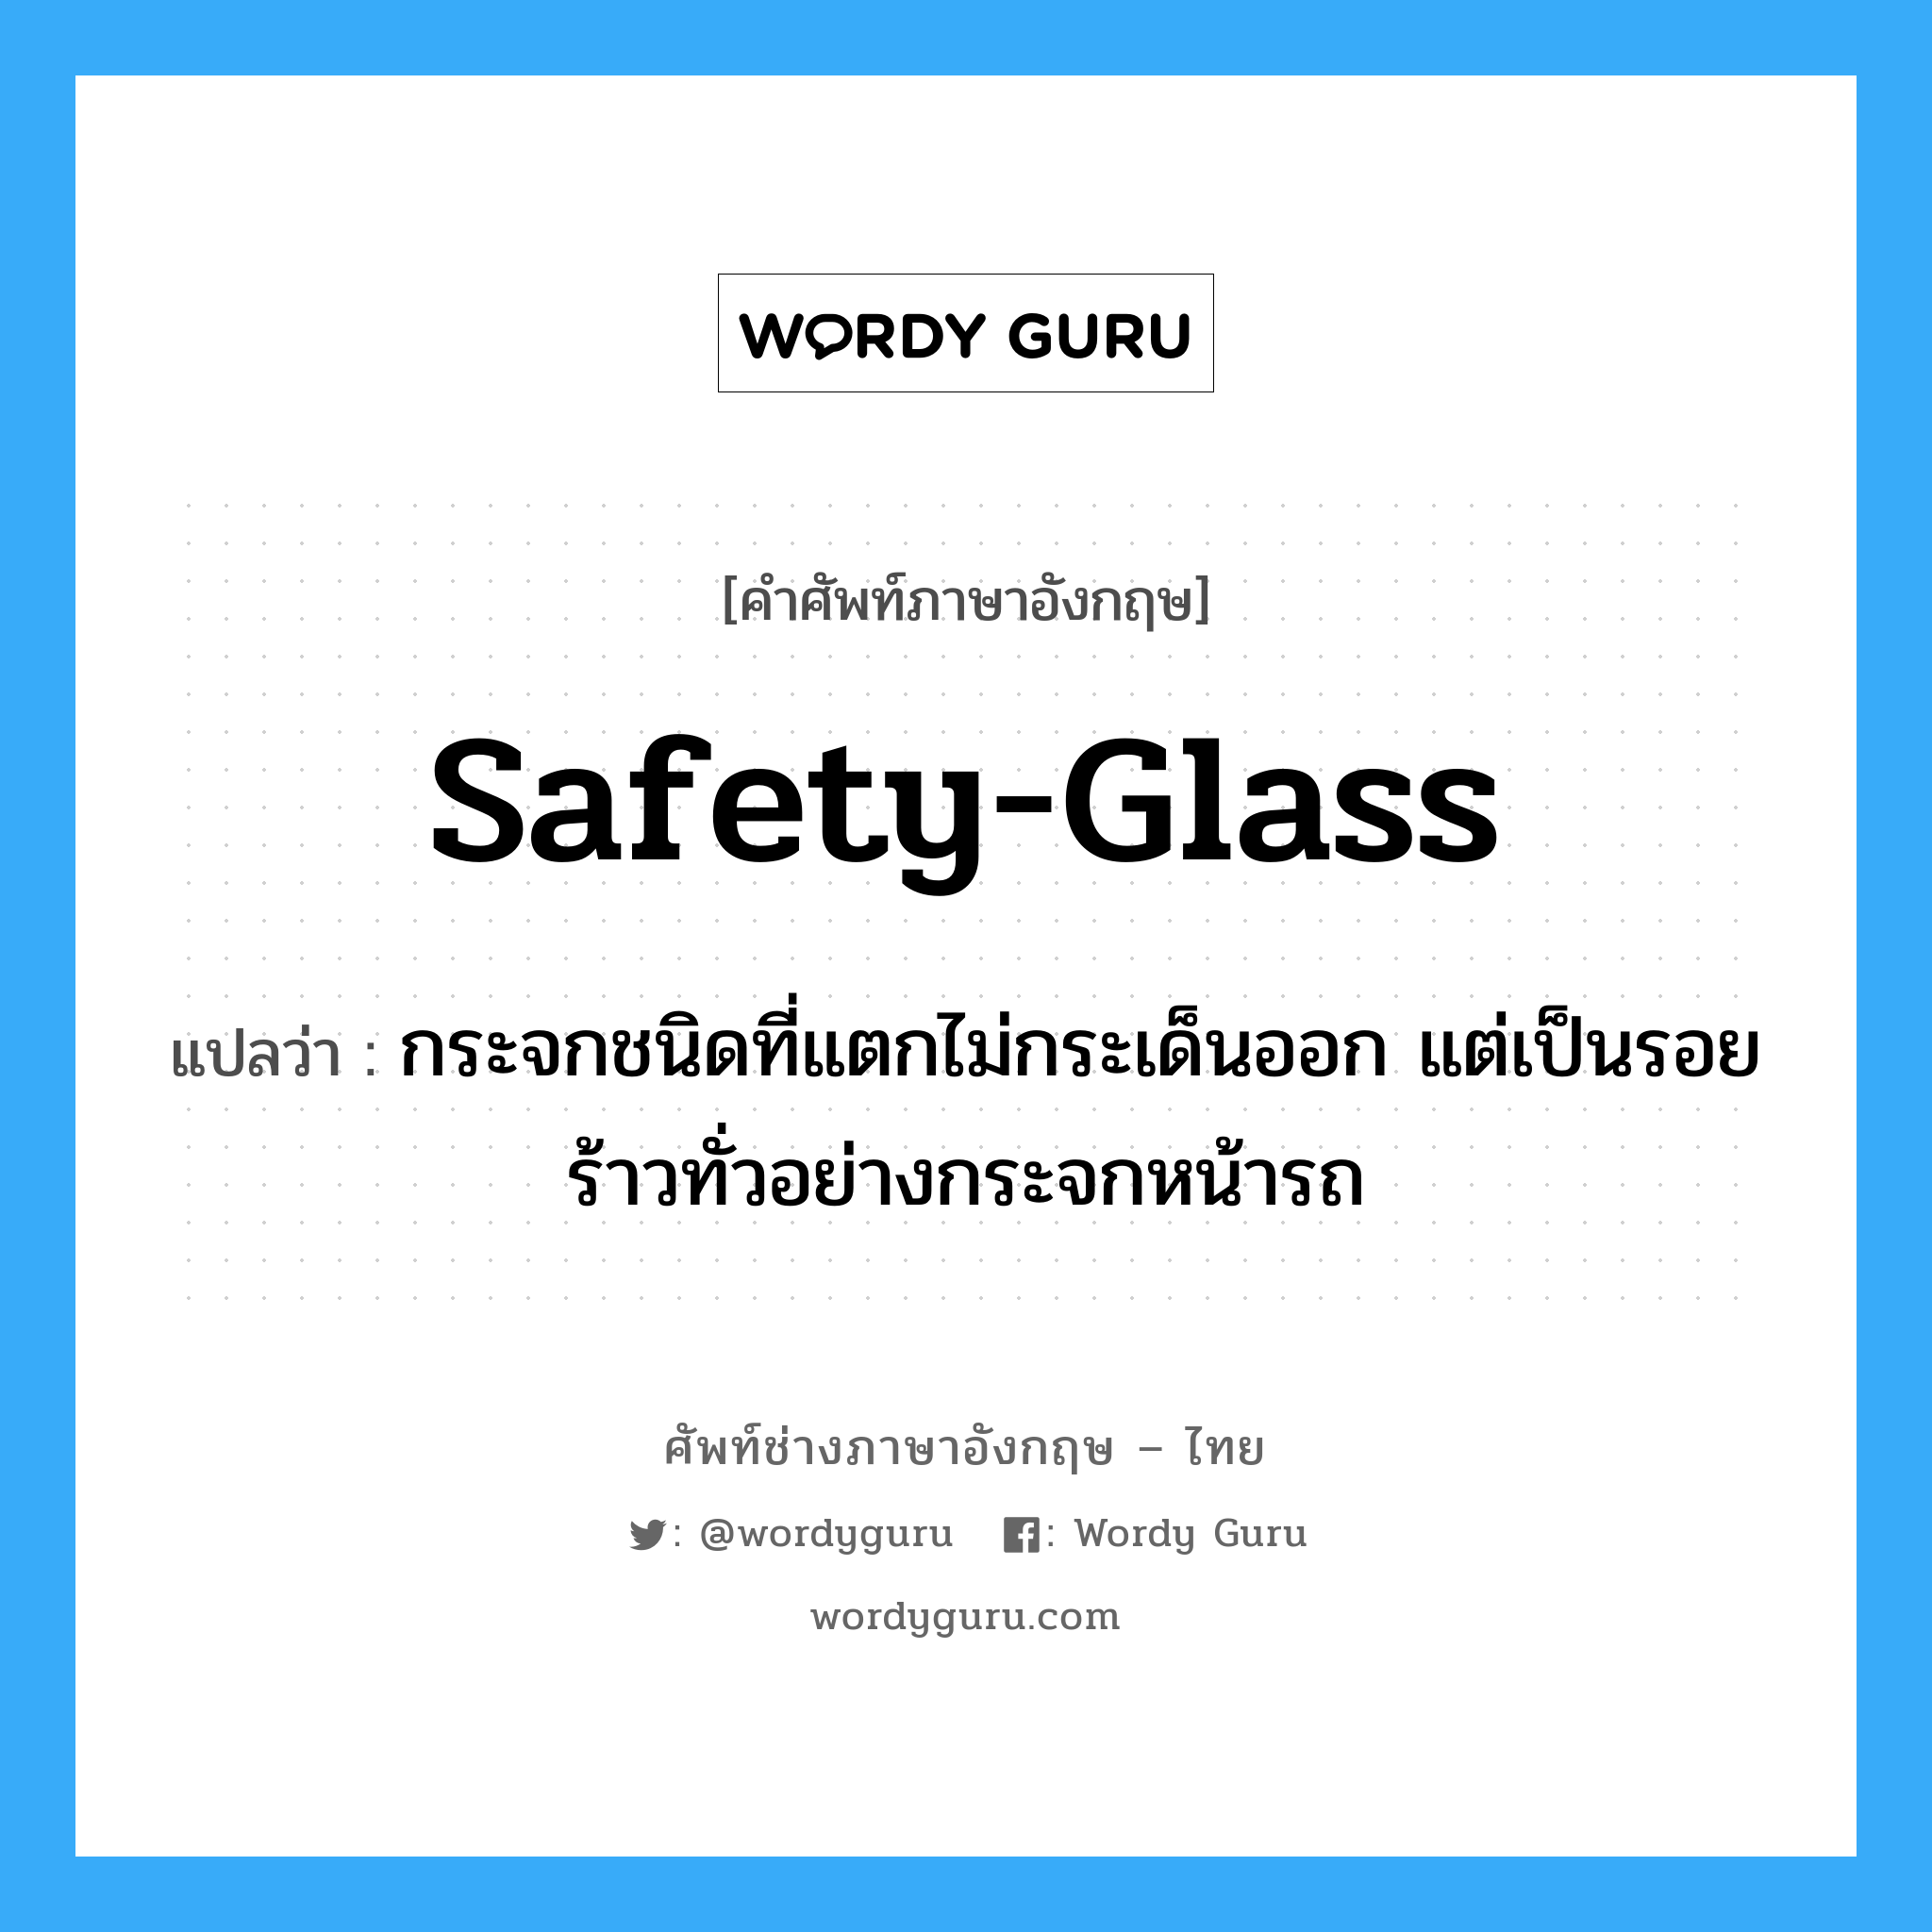 safety-glass แปลว่า?, คำศัพท์ช่างภาษาอังกฤษ - ไทย safety-glass คำศัพท์ภาษาอังกฤษ safety-glass แปลว่า กระจกชนิดที่แตกไม่กระเด็นออก แต่เป็นรอยร้าวทั่วอย่างกระจกหน้ารถ